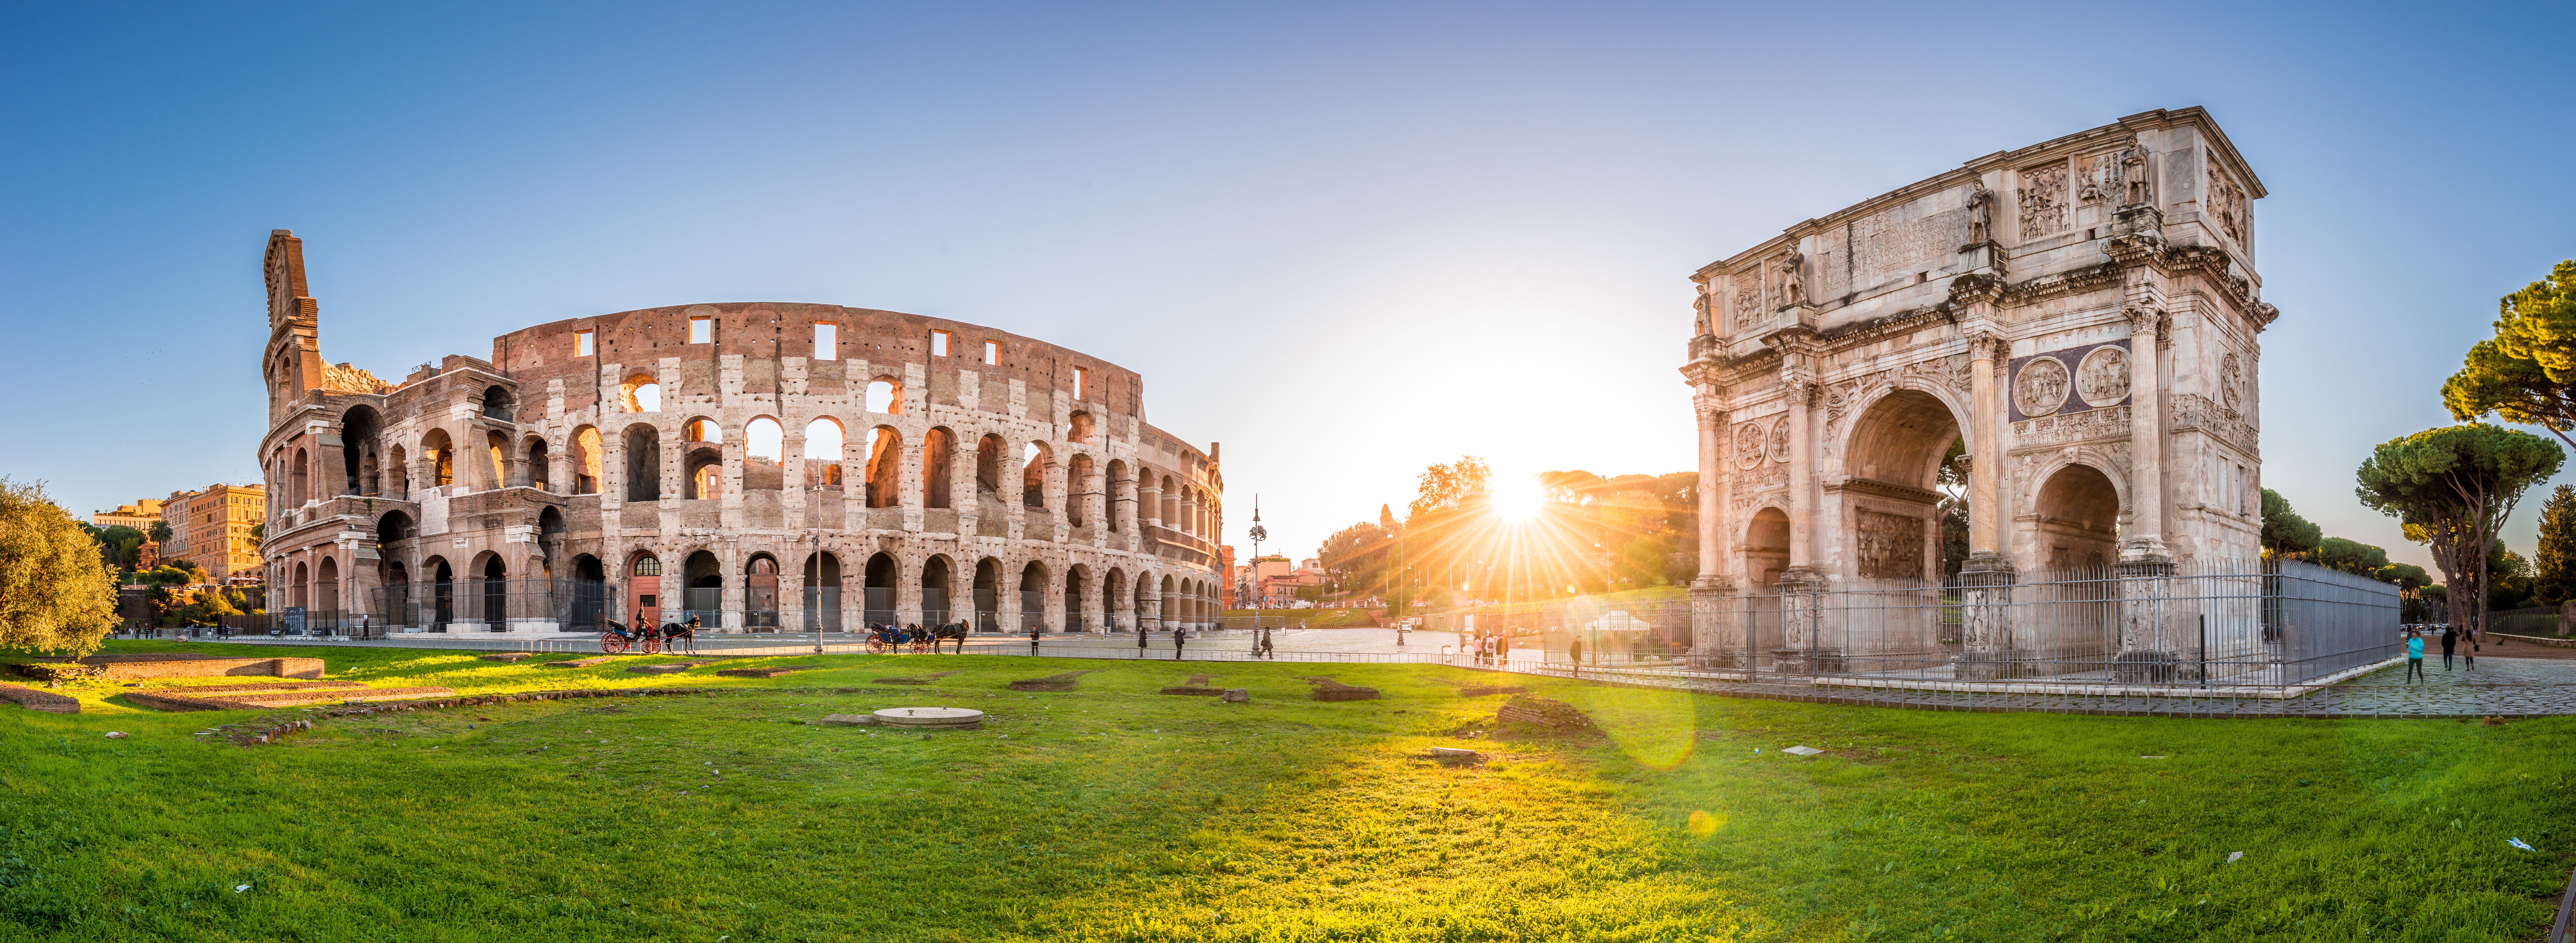 Pernottamento a Roma ed Esperienza al Colosseo, Foro Romano e Palatino